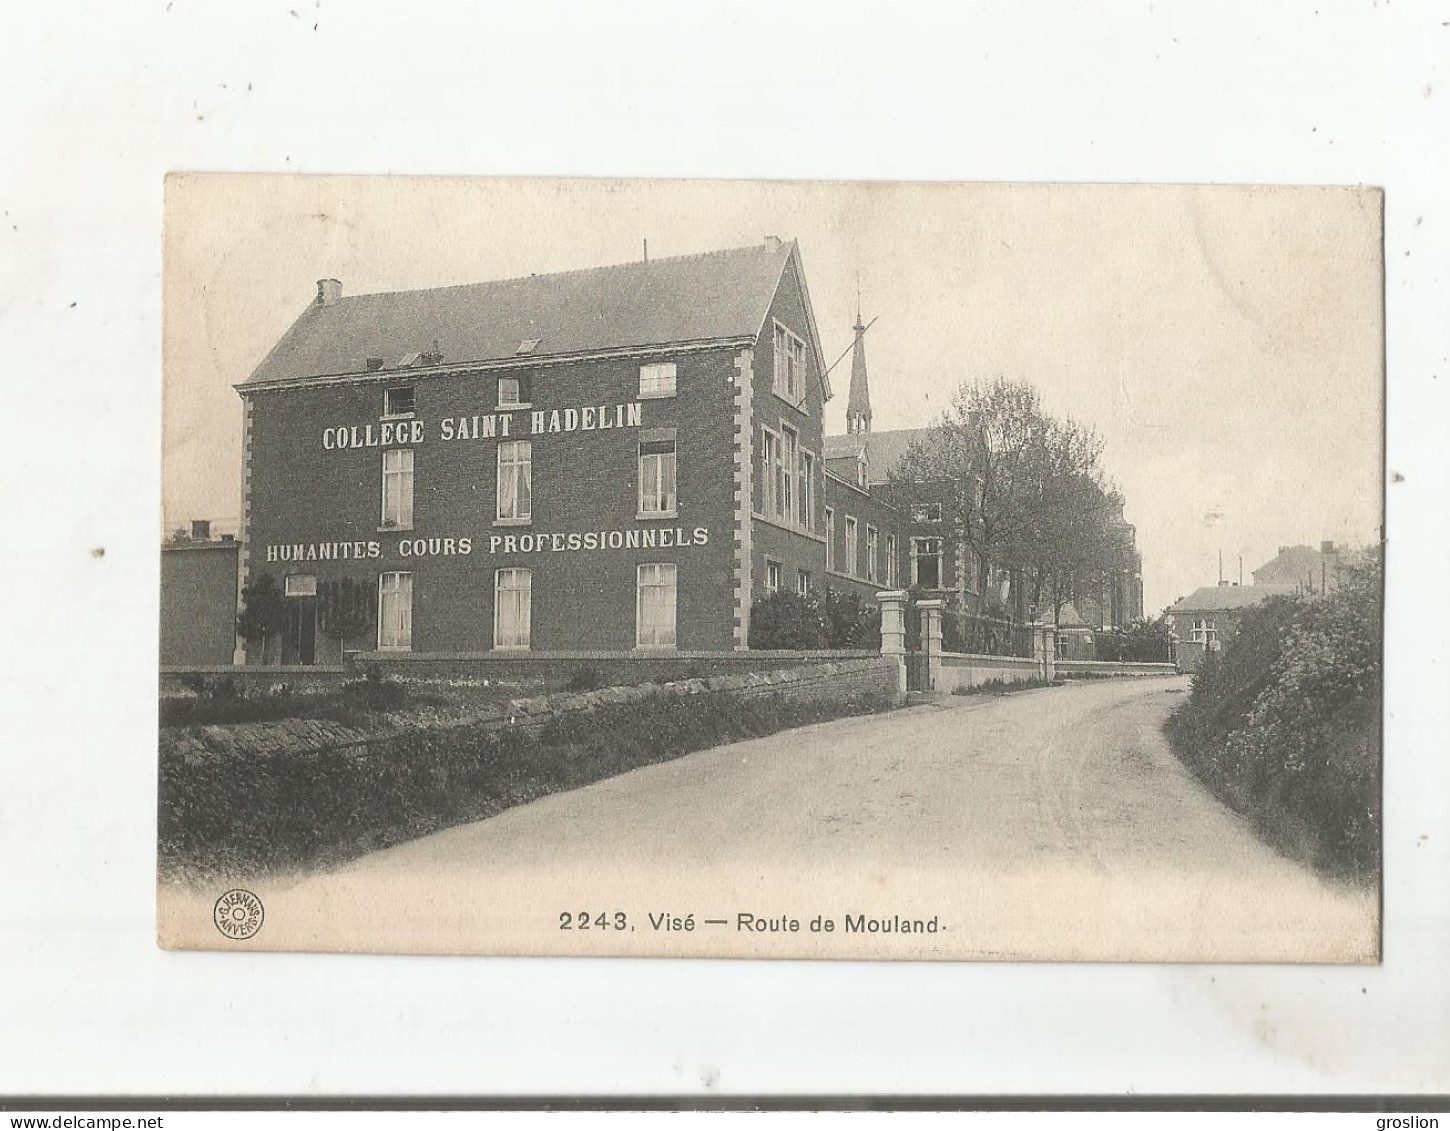 VISE 2243 ROUTE DE MOULAND (COLLEGE SAINT HADELIN)  1912 - Wezet